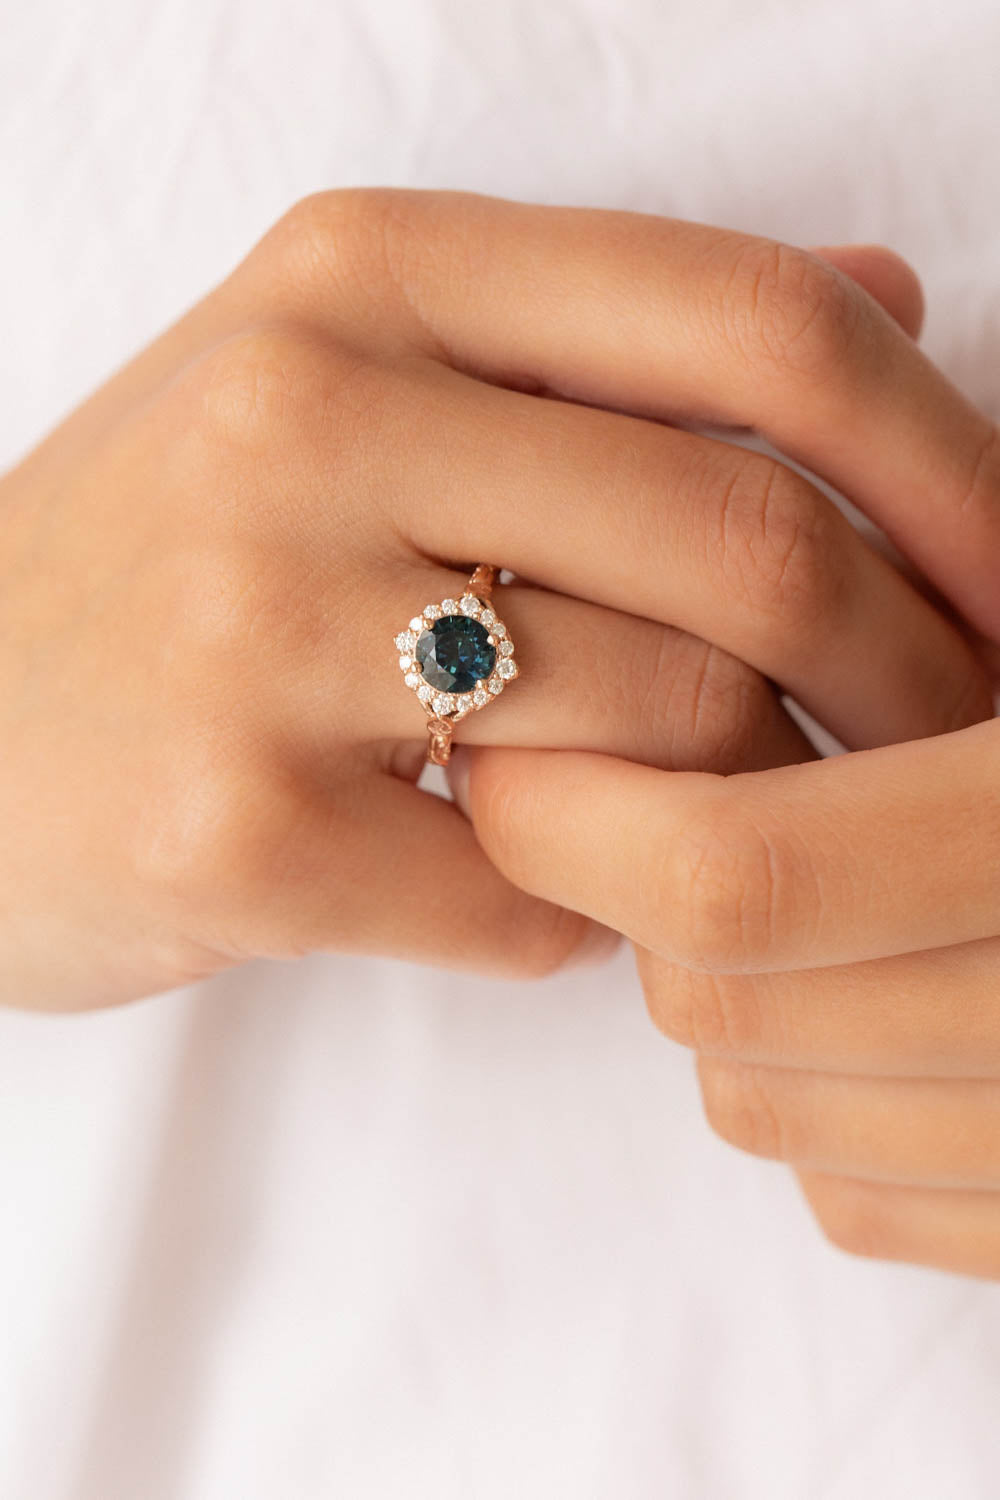 Florentina | custom engagement ring with round cut gemstone 8 mm - Eden Garden Jewelry™